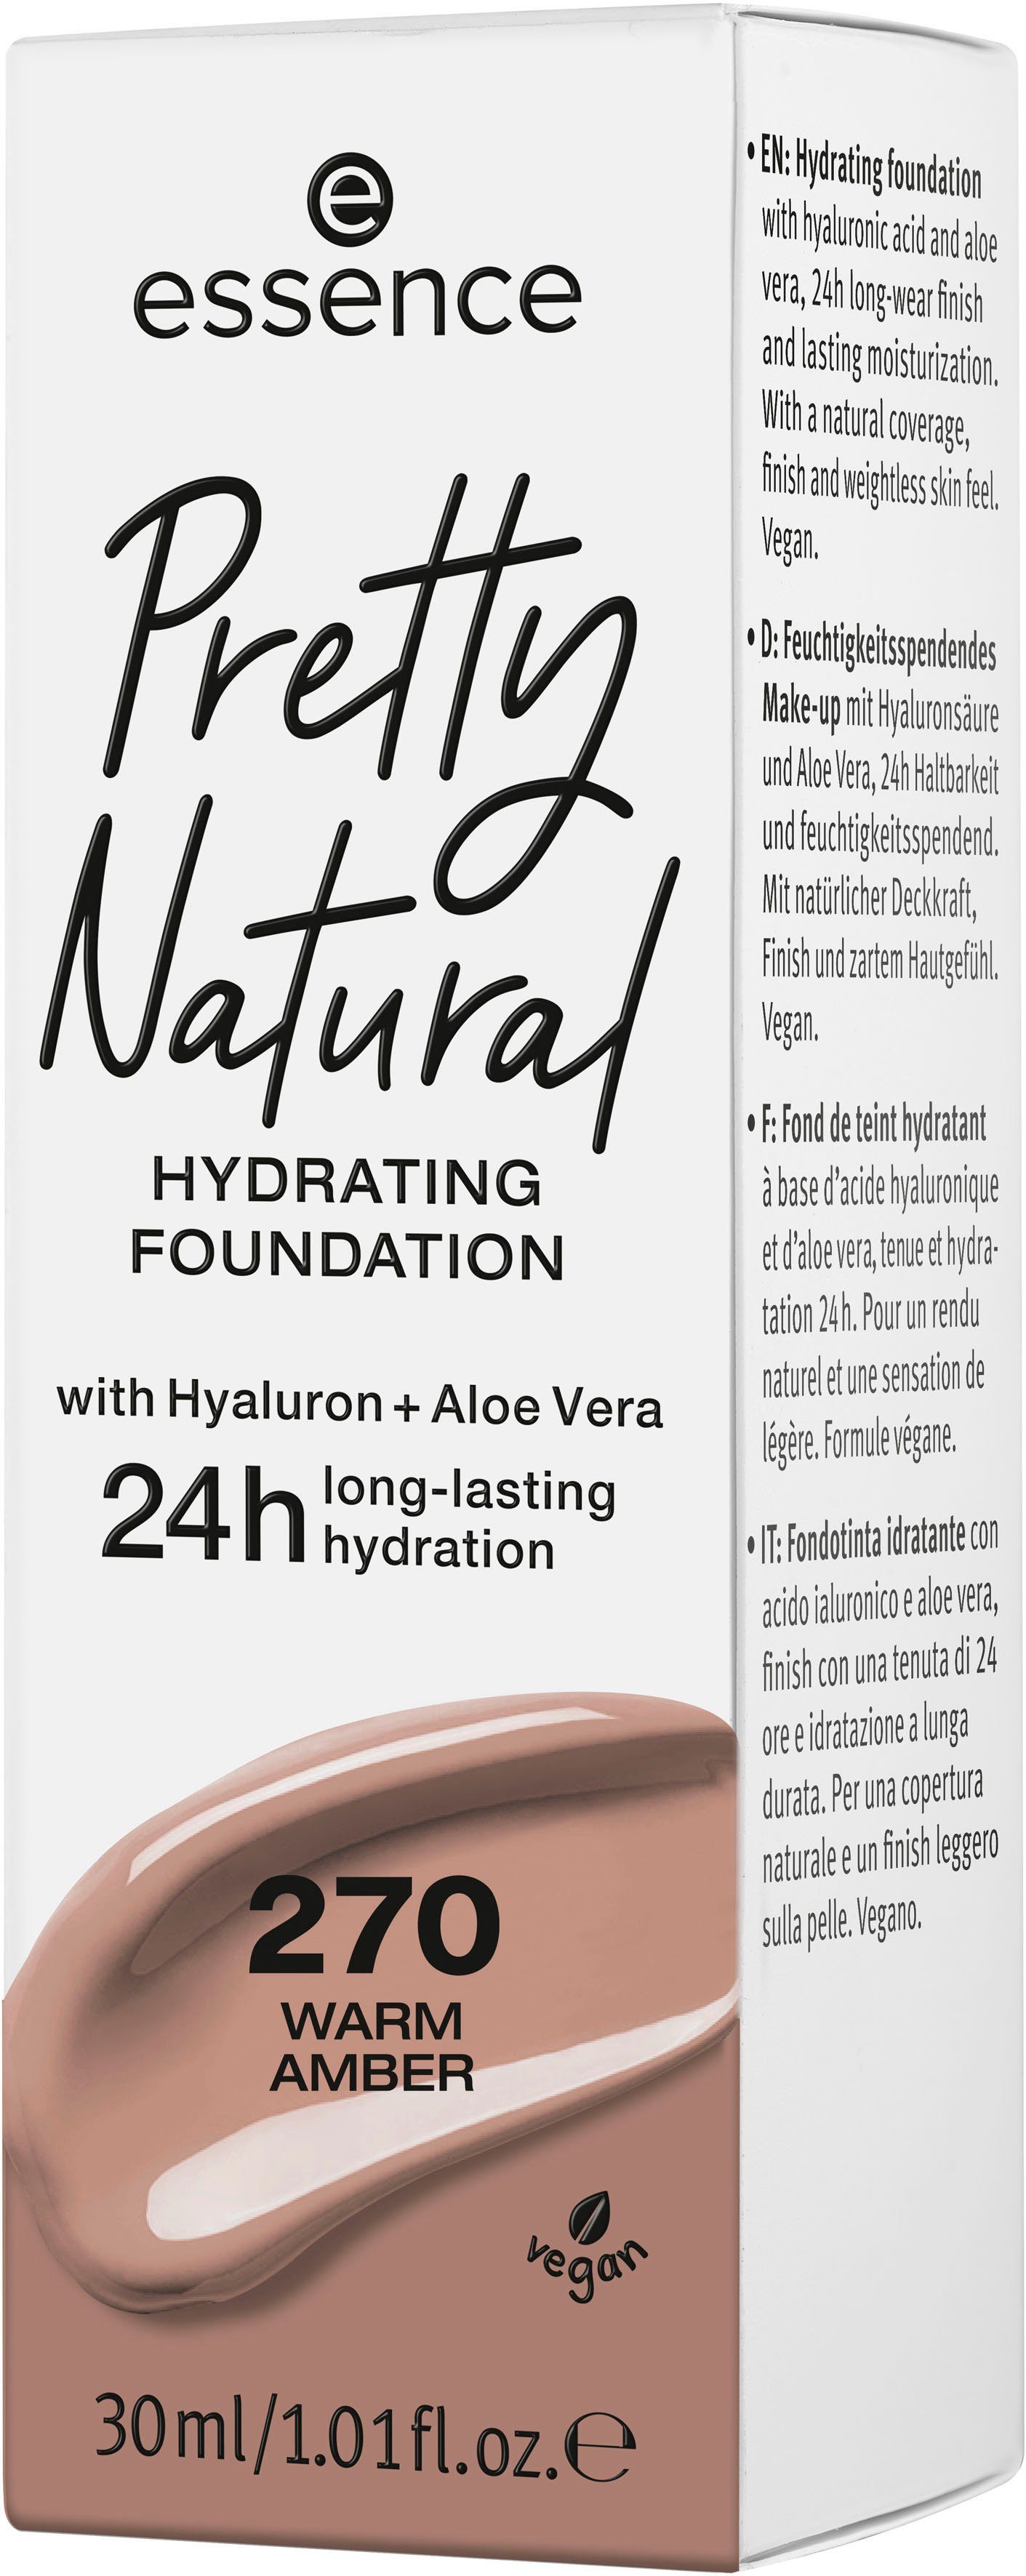 Warm Pretty Foundation Natural Essence 3-tlg. 270 Amber HYDRATING,